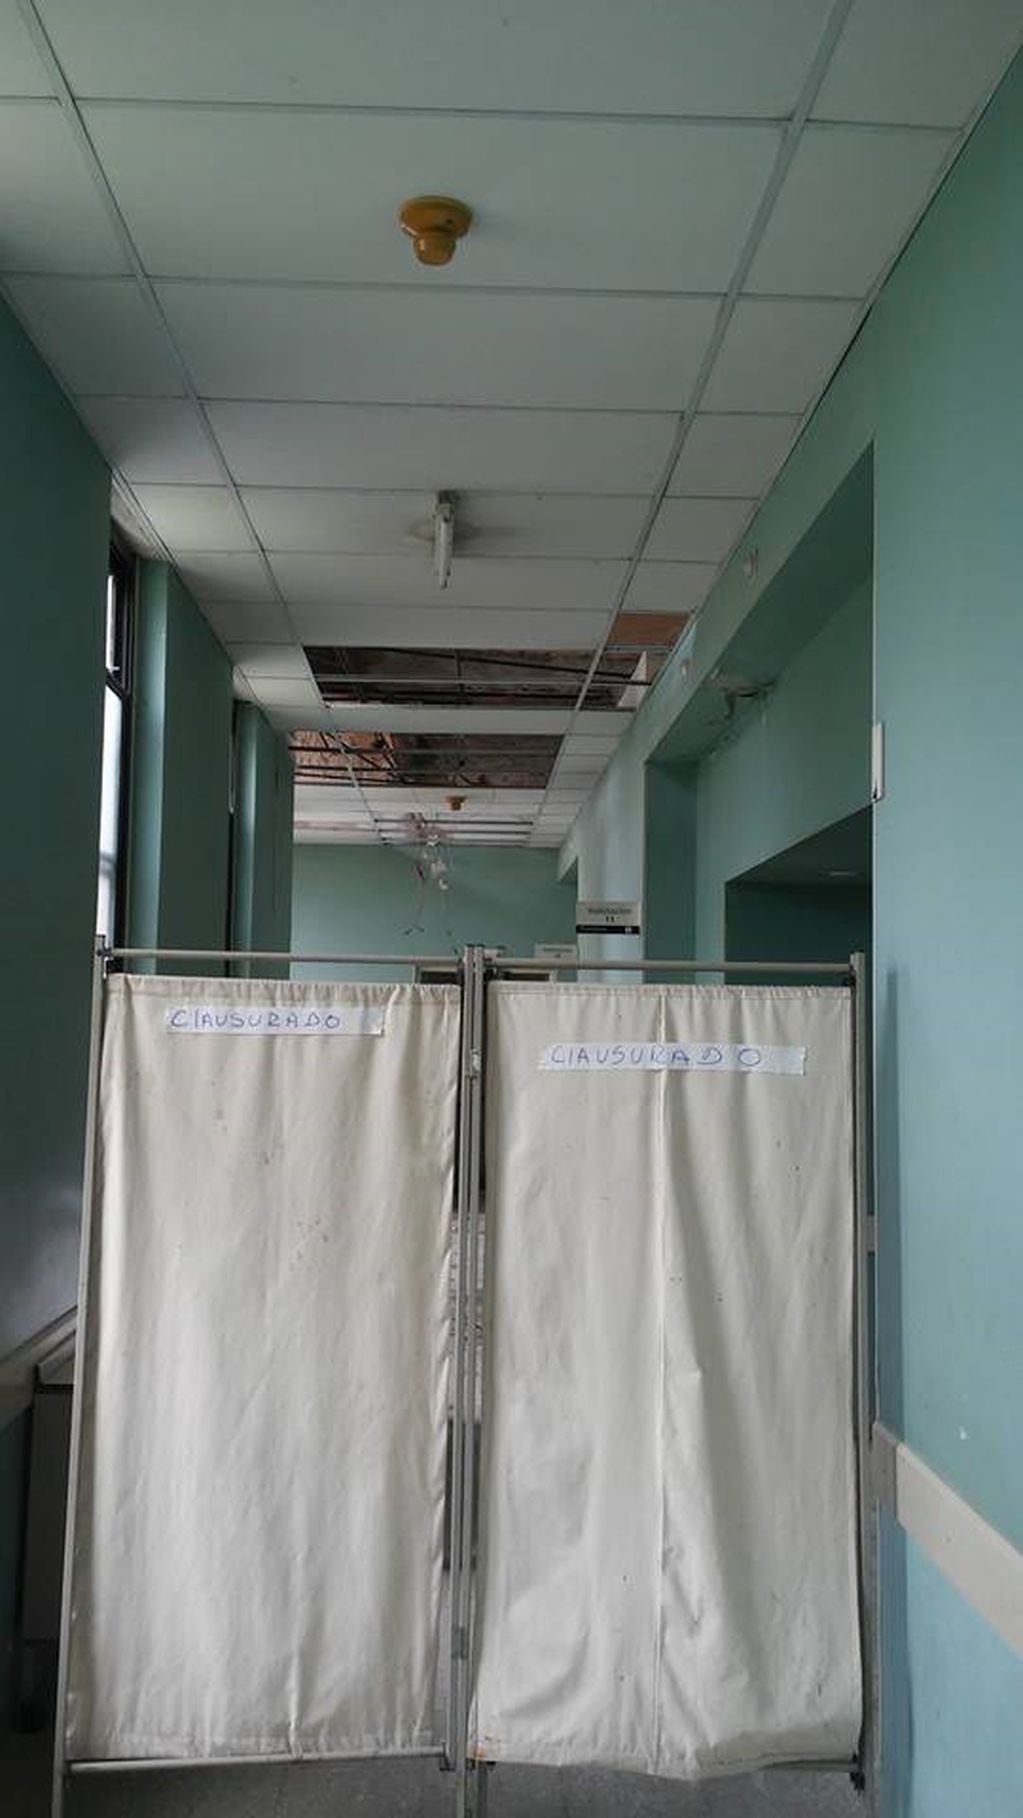 Denuncian el deterioro y falta de mantenimiento en el Hospital Centenario de Rosario.